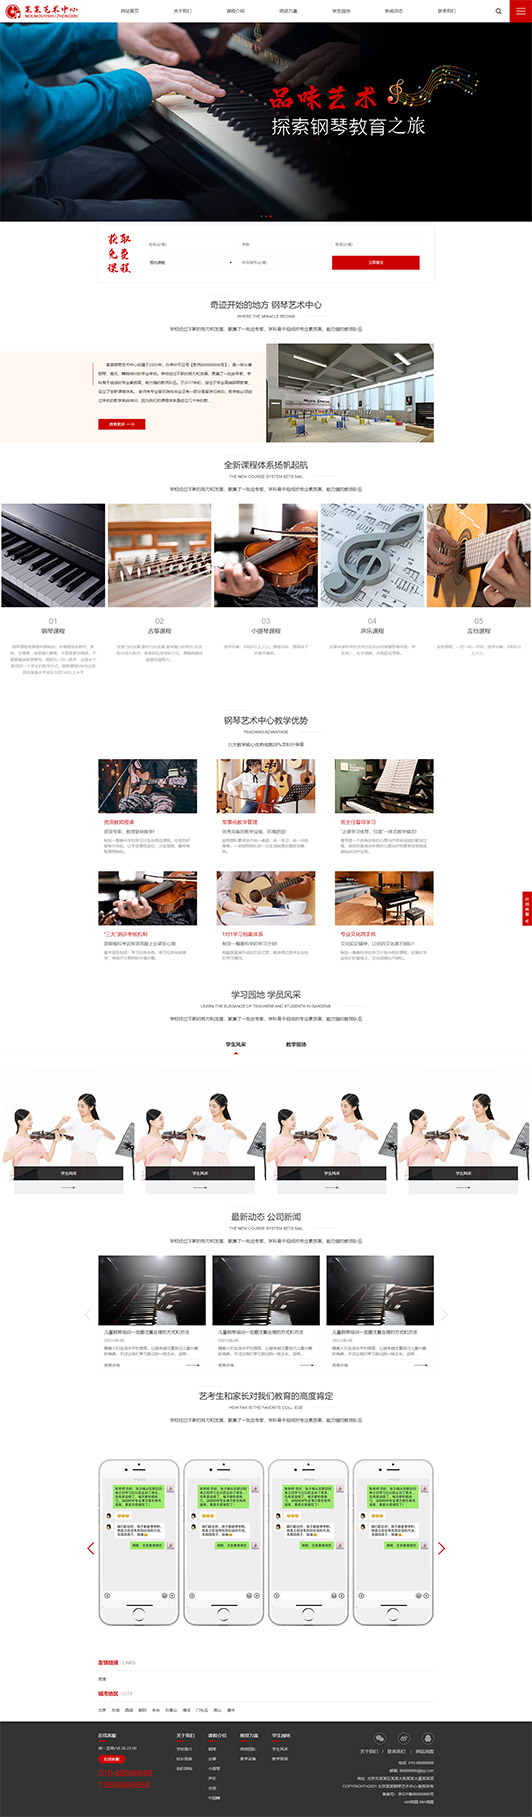 泰州钢琴艺术培训公司响应式企业网站